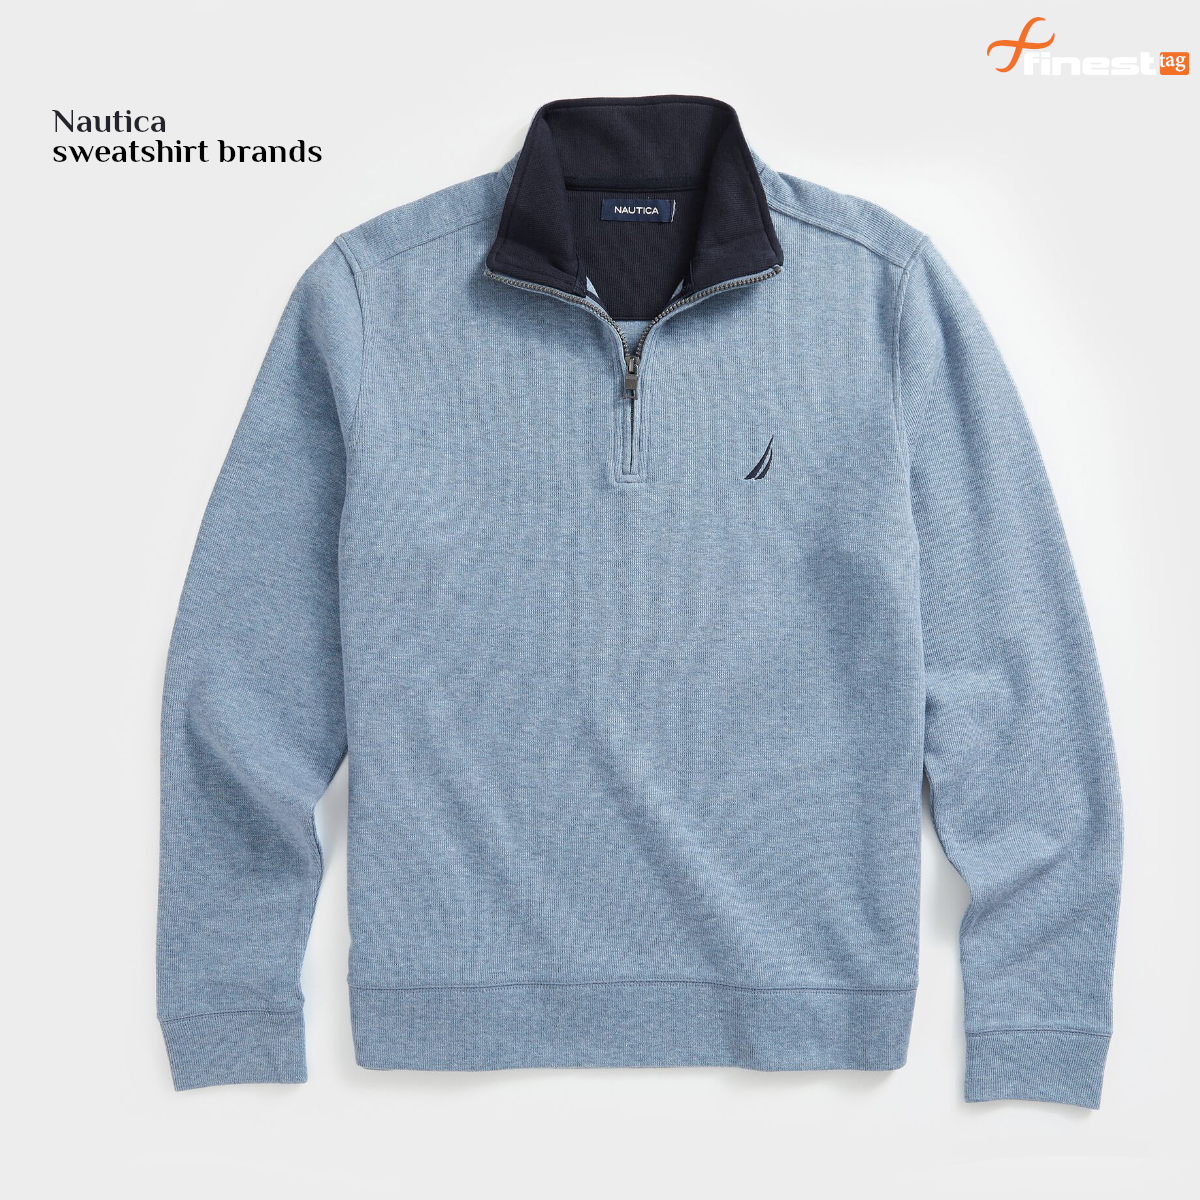 Nautica sweatshirt brands @ Best Price in India